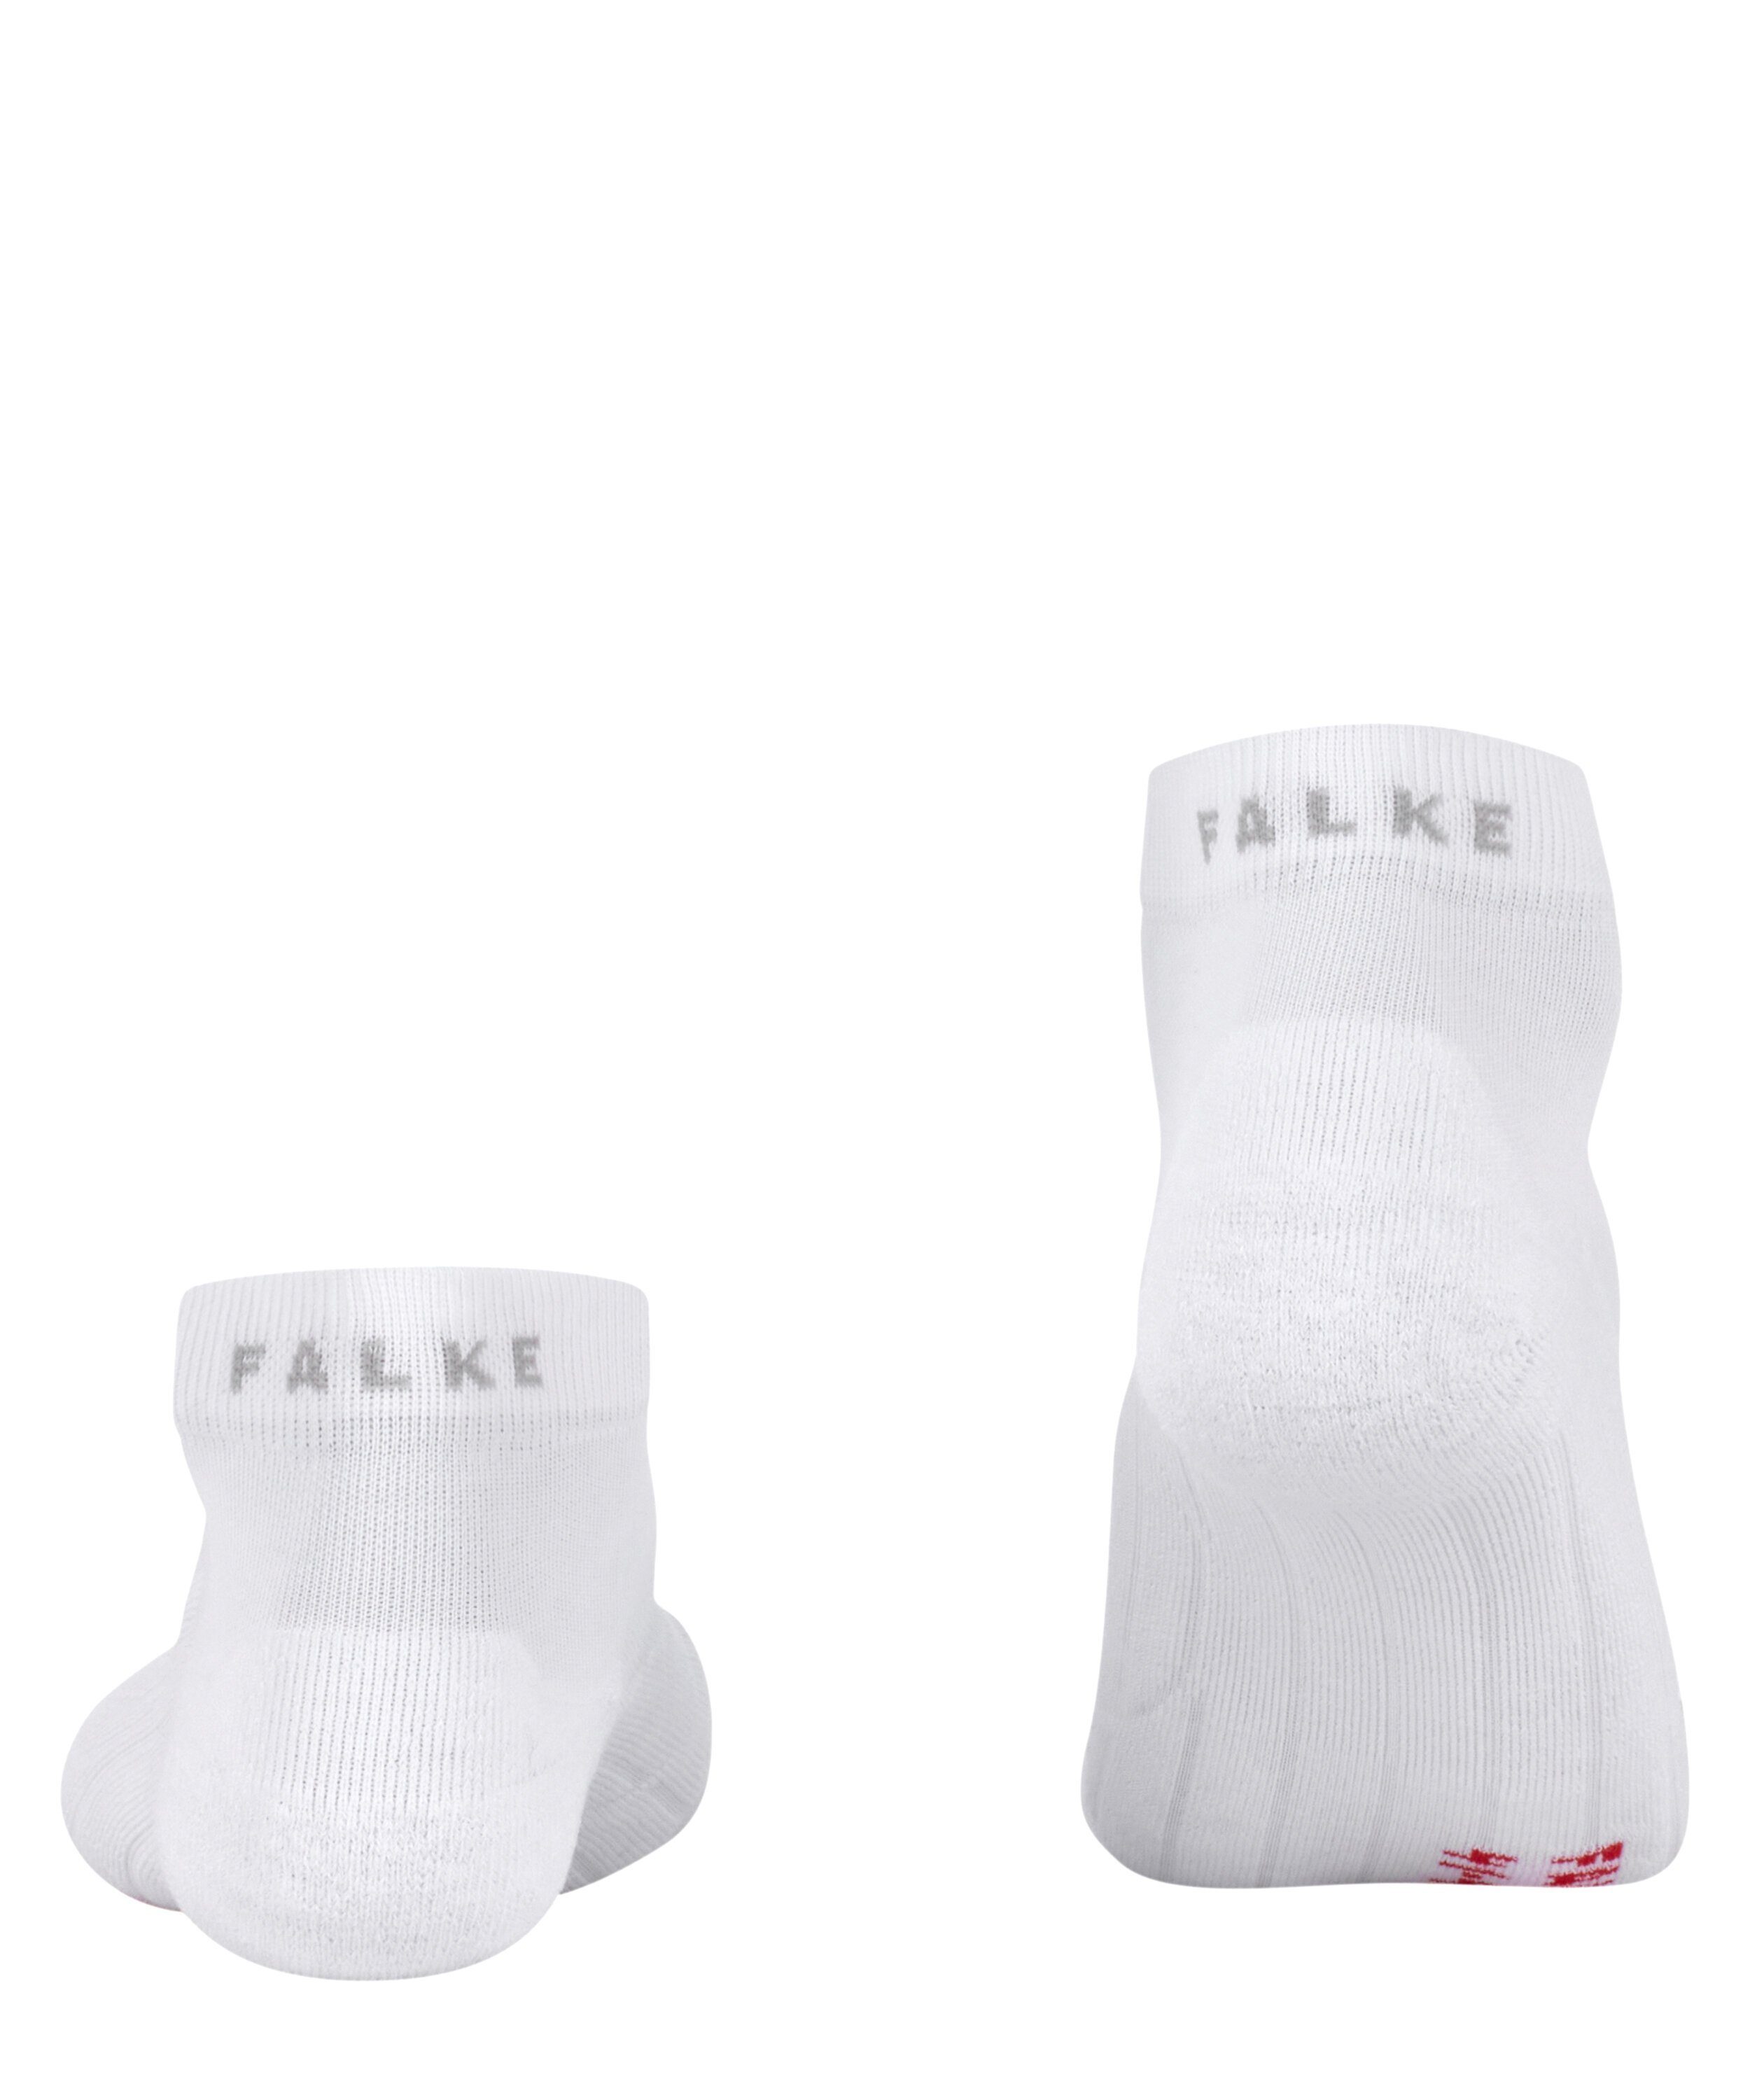 (2000) mit GO2 FALKE Short für (1-Paar) white Polsterung Spikeschuhe Sportsocken mittelstarker